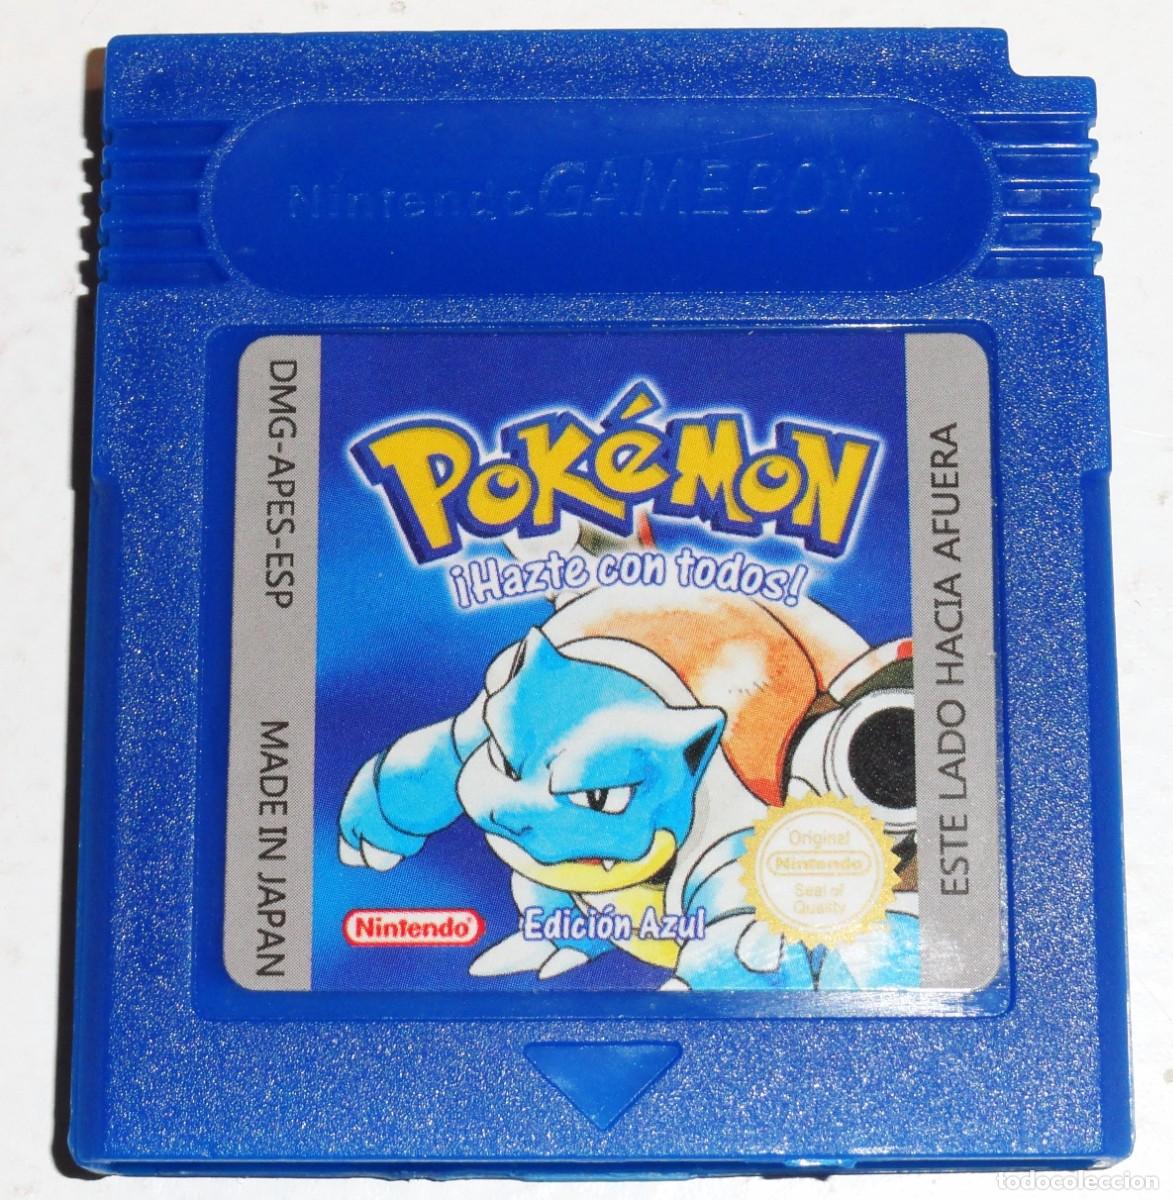 juego pokemon game boy no es ret - Buy Video games and consoles Game Boy at todocoleccion - 385083839